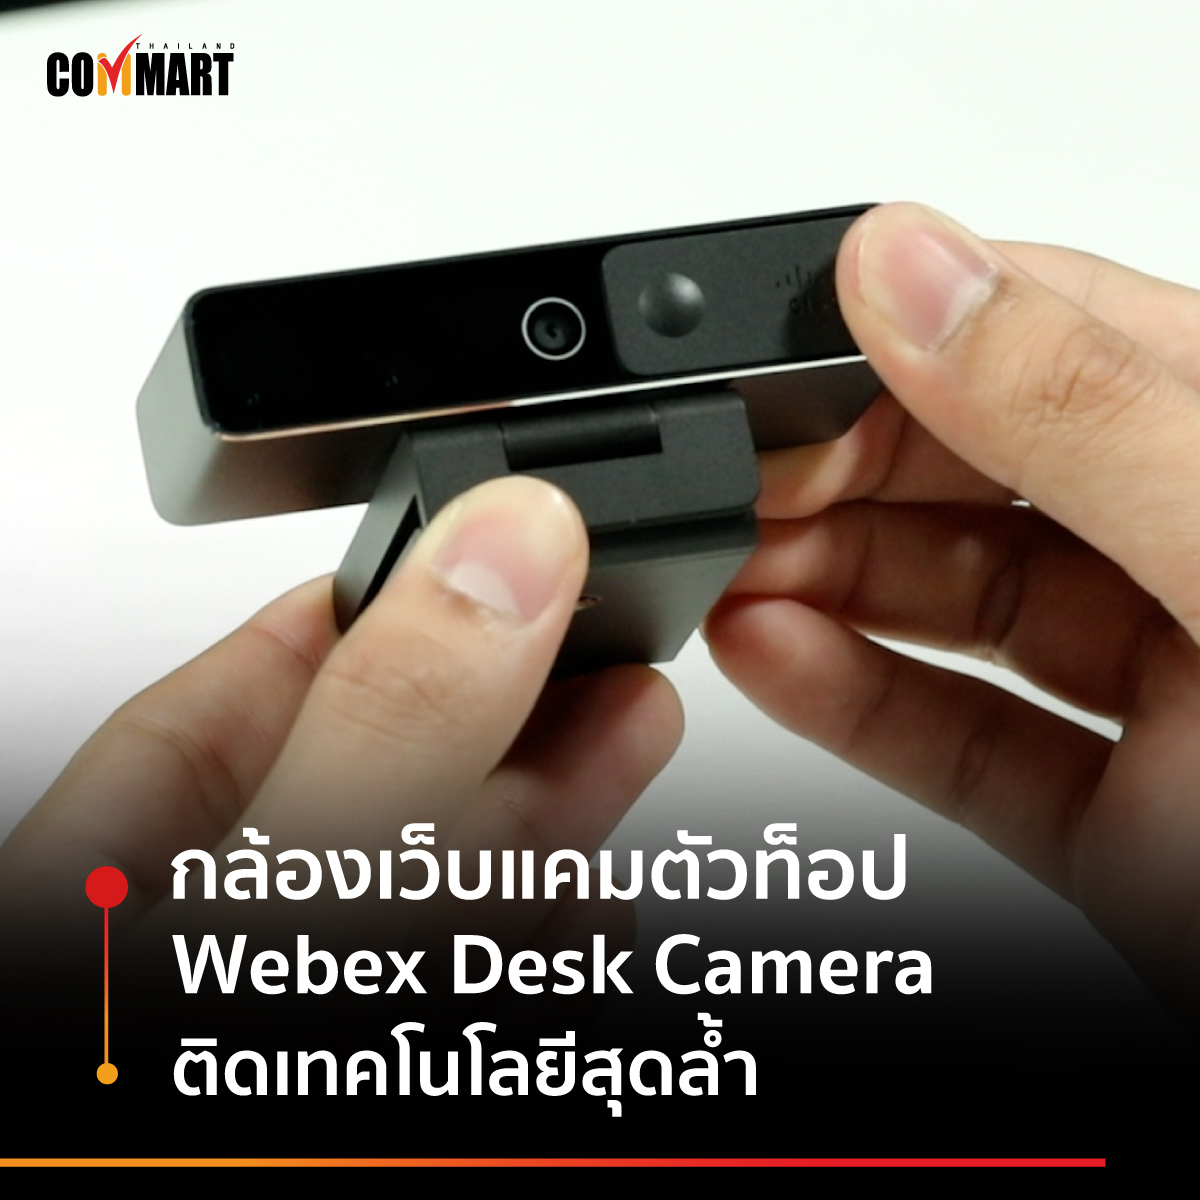 กล้องเว็บแคมตัวท็อป ติดเทคโนโลยีสุดล้ำ Webex Desk Camera